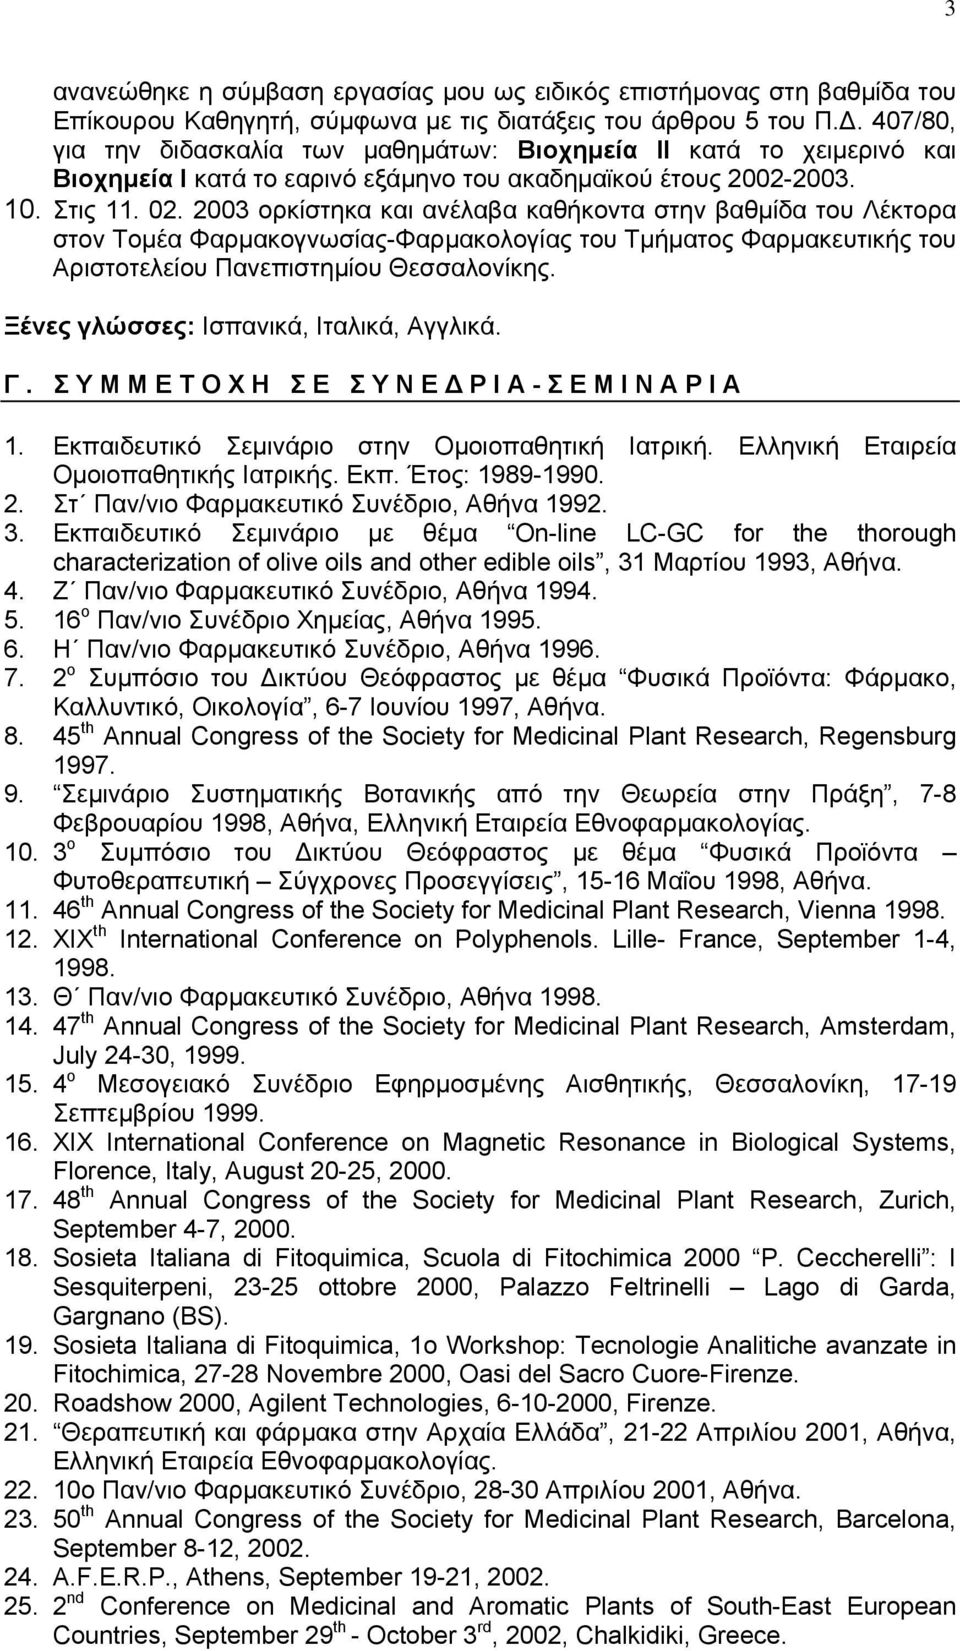 2003 ορκίστηκα και ανέλαβα καθήκοντα στην βαθμίδα του Λέκτορα στον Τομέα Φαρμακογνωσίας-Φαρμακολογίας του Τμήματος Φαρμακευτικής του Αριστοτελείου Πανεπιστημίου Θεσσαλονίκης.